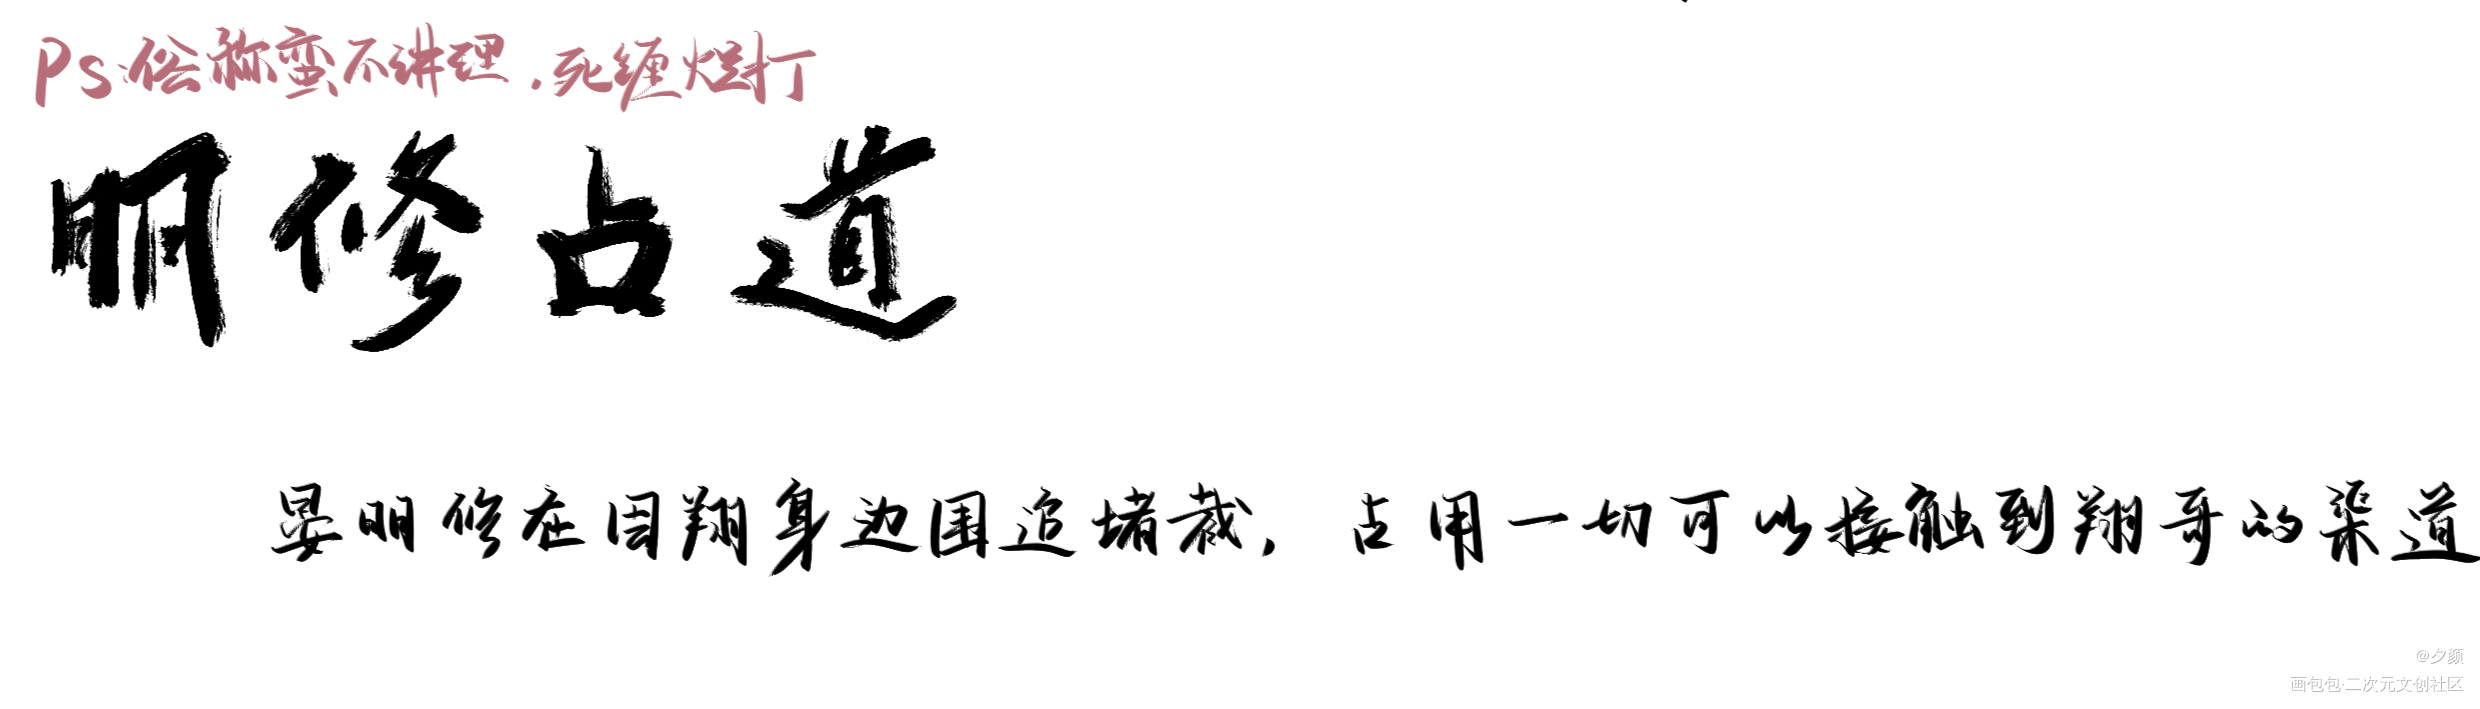 188成语小课堂_188男团周翔晏明修字体设计写字见字如晤板写绘画作品